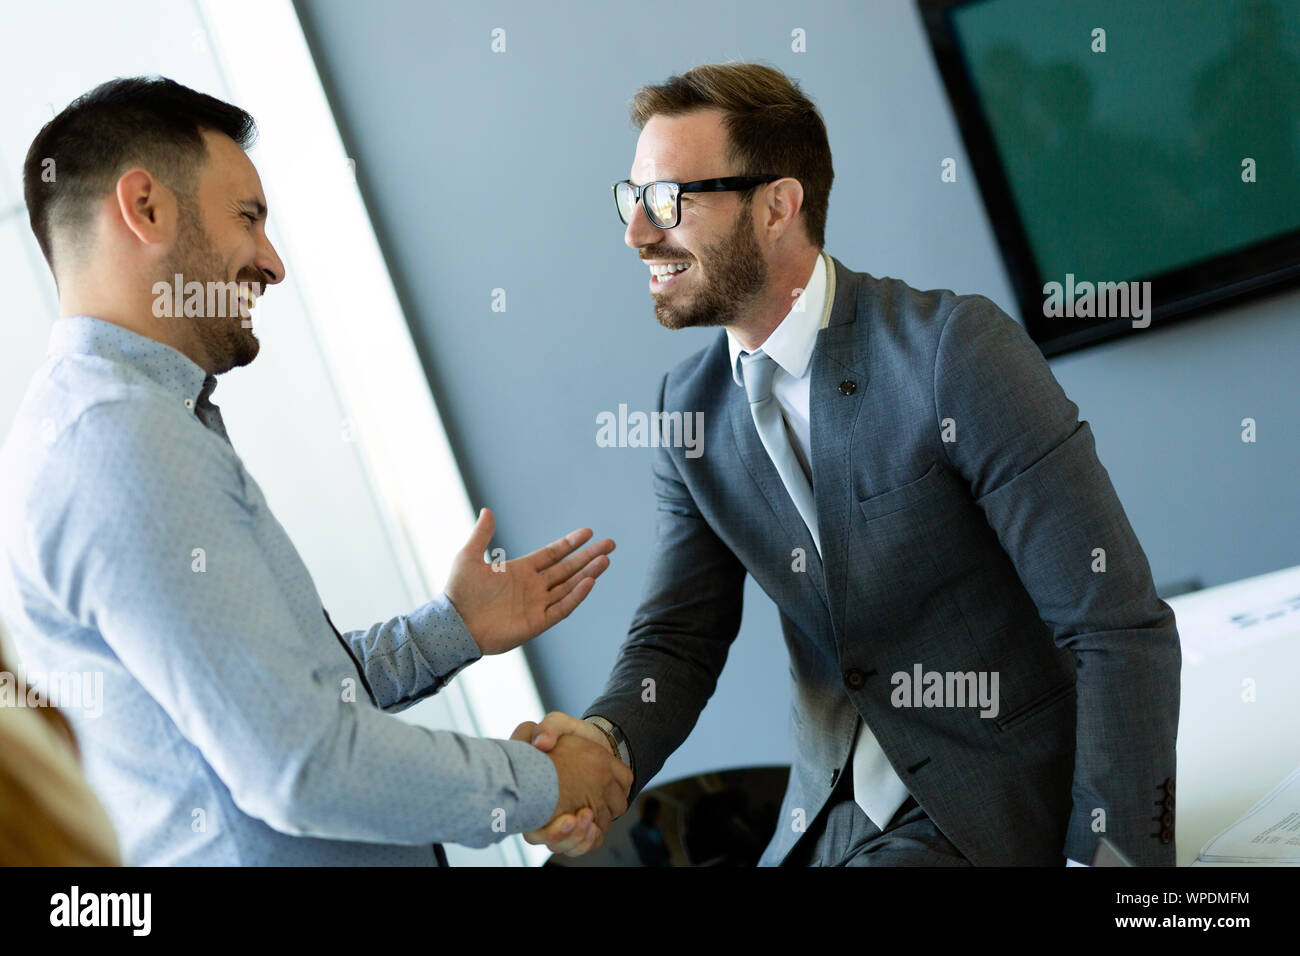 Bureau et d'entreprise - deux businessmen shaking hands in office Banque D'Images